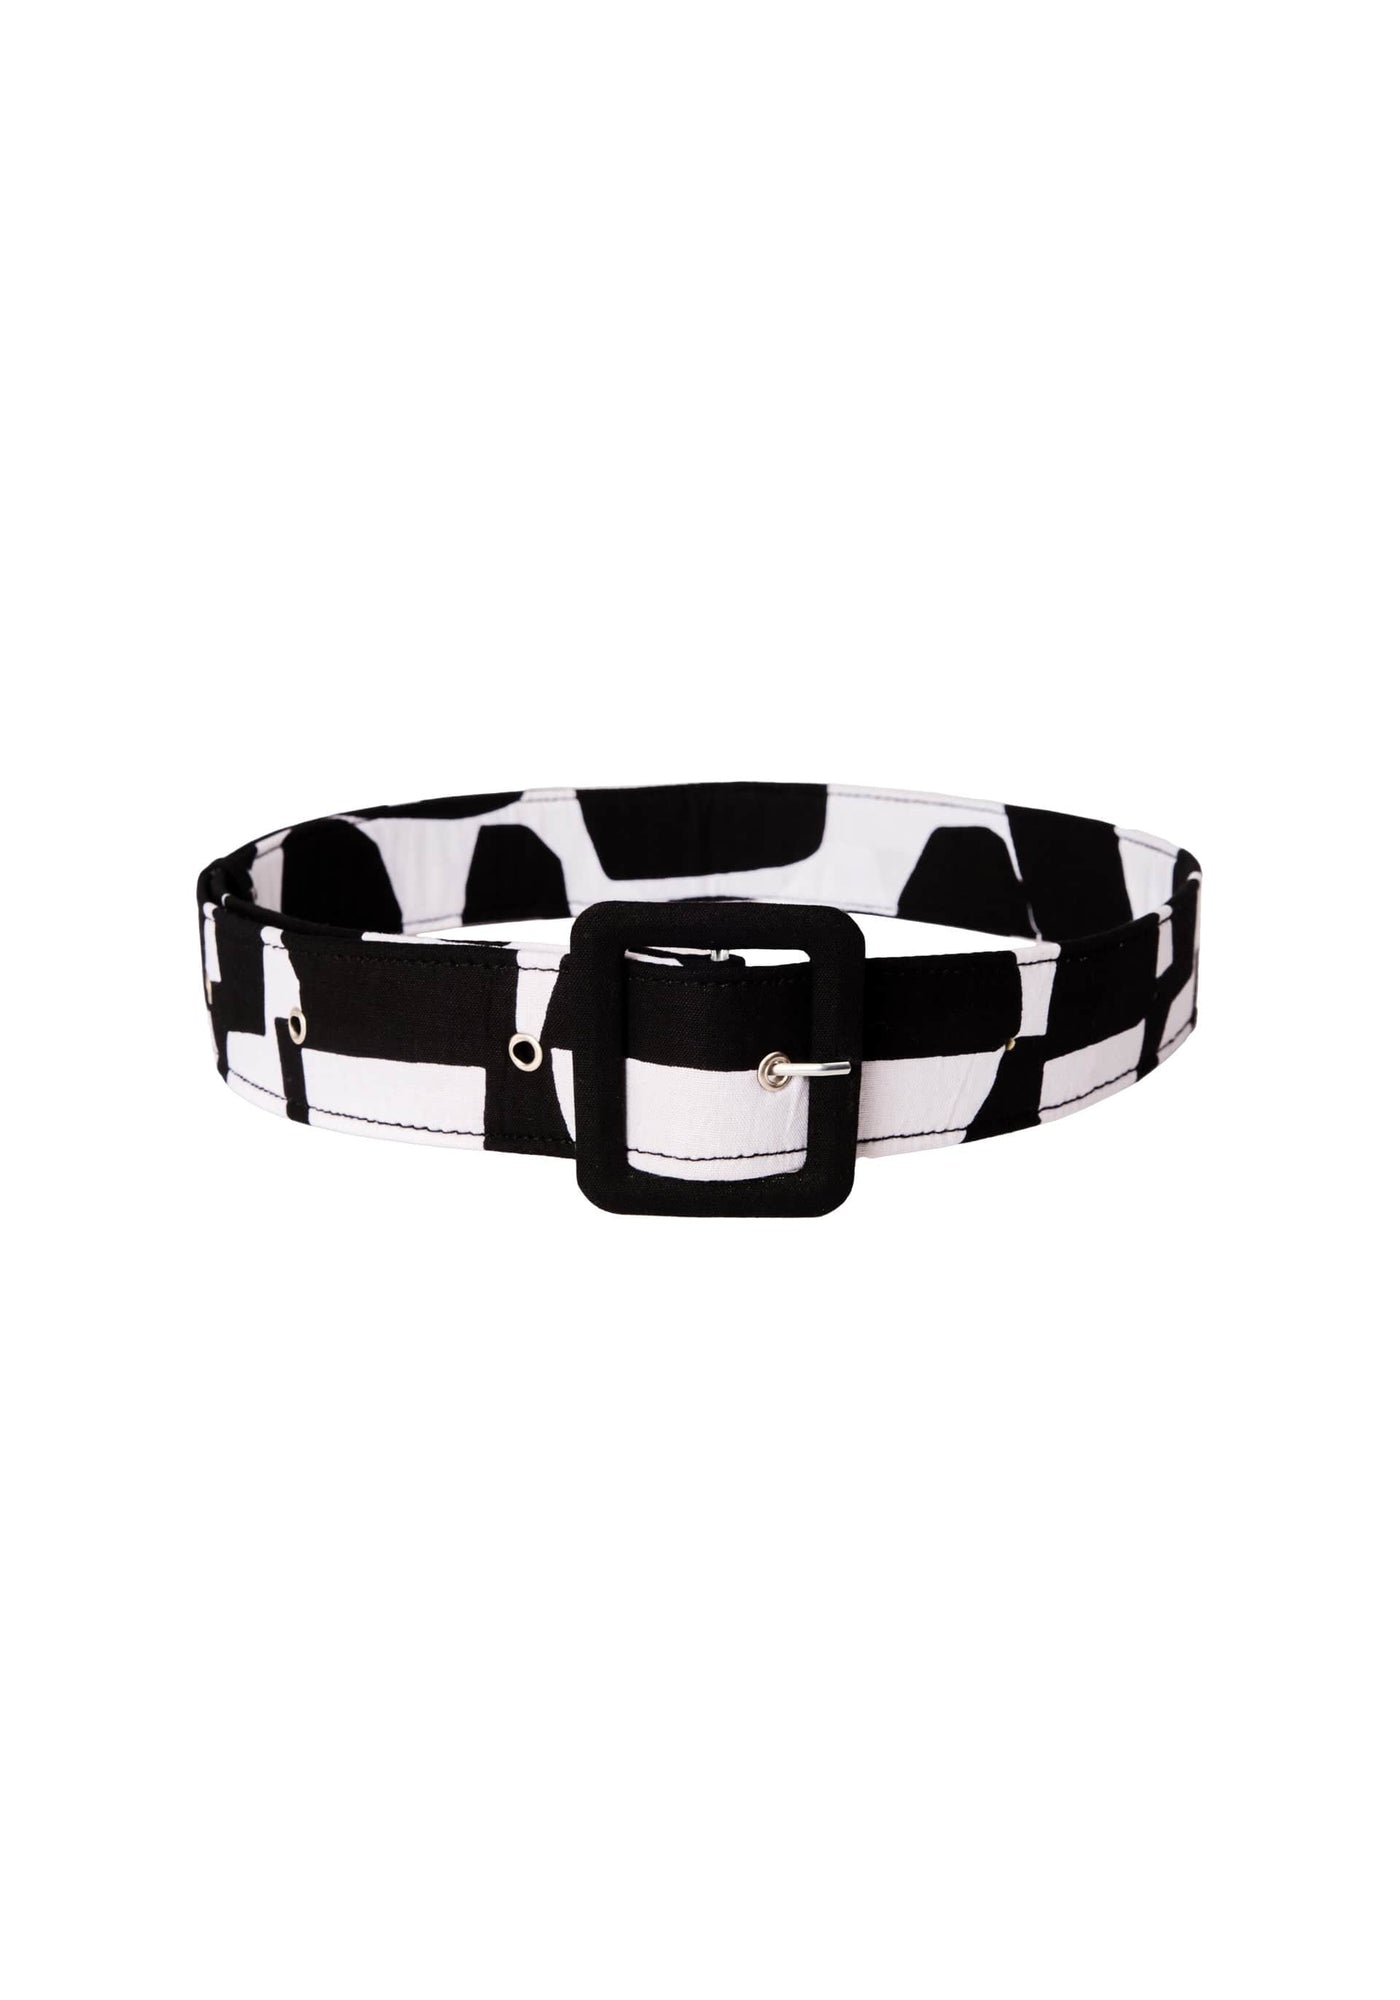 YEVU Accessories - Belts Standard Belt - Opposites Attract